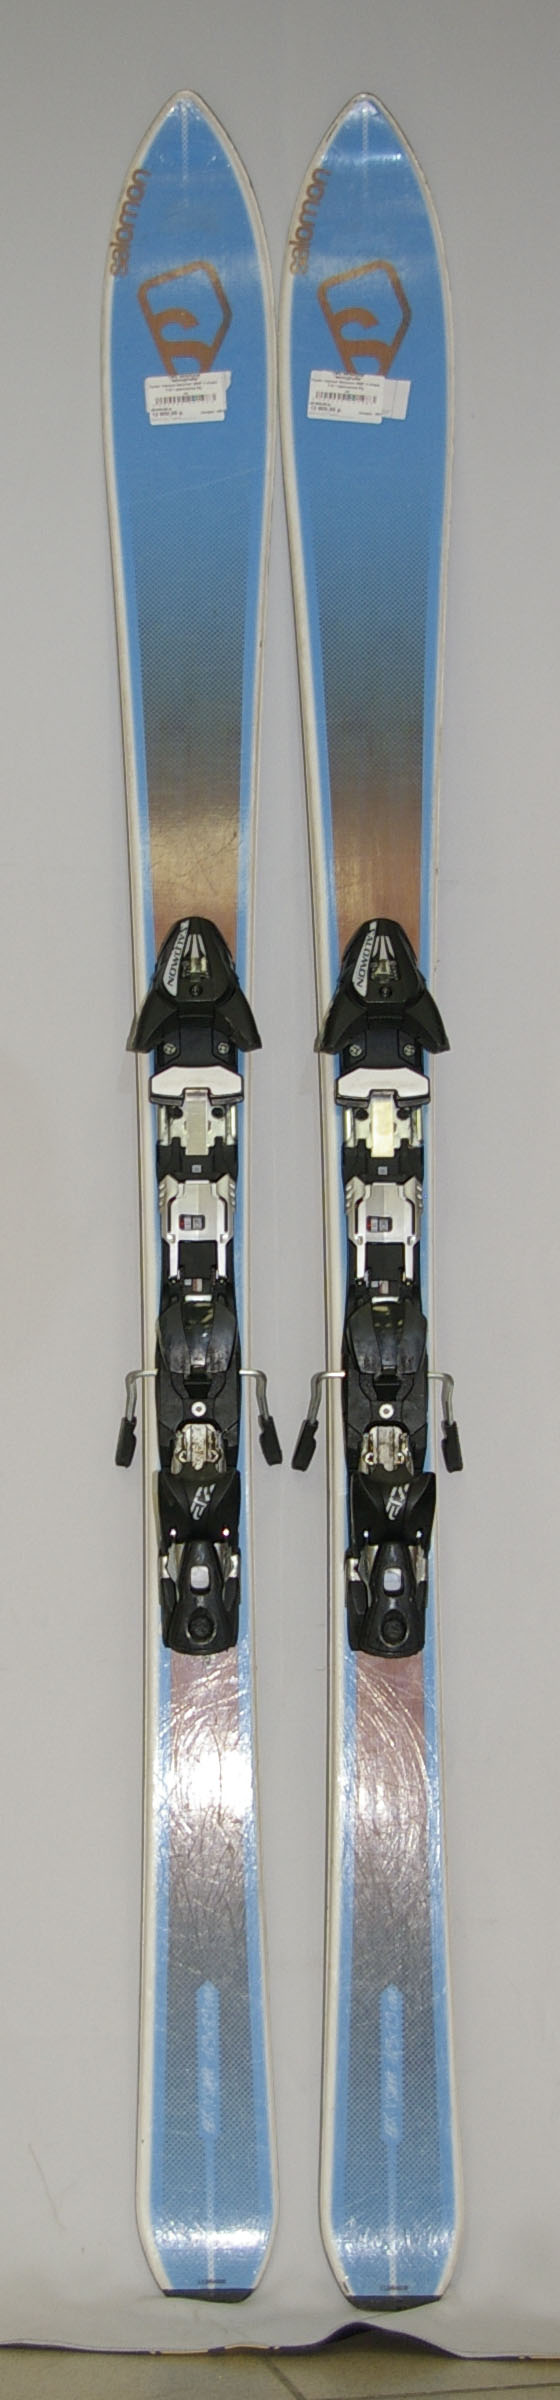 Купить Лыжи горные Salomon BBR V shape 7.9 + крепление б/у